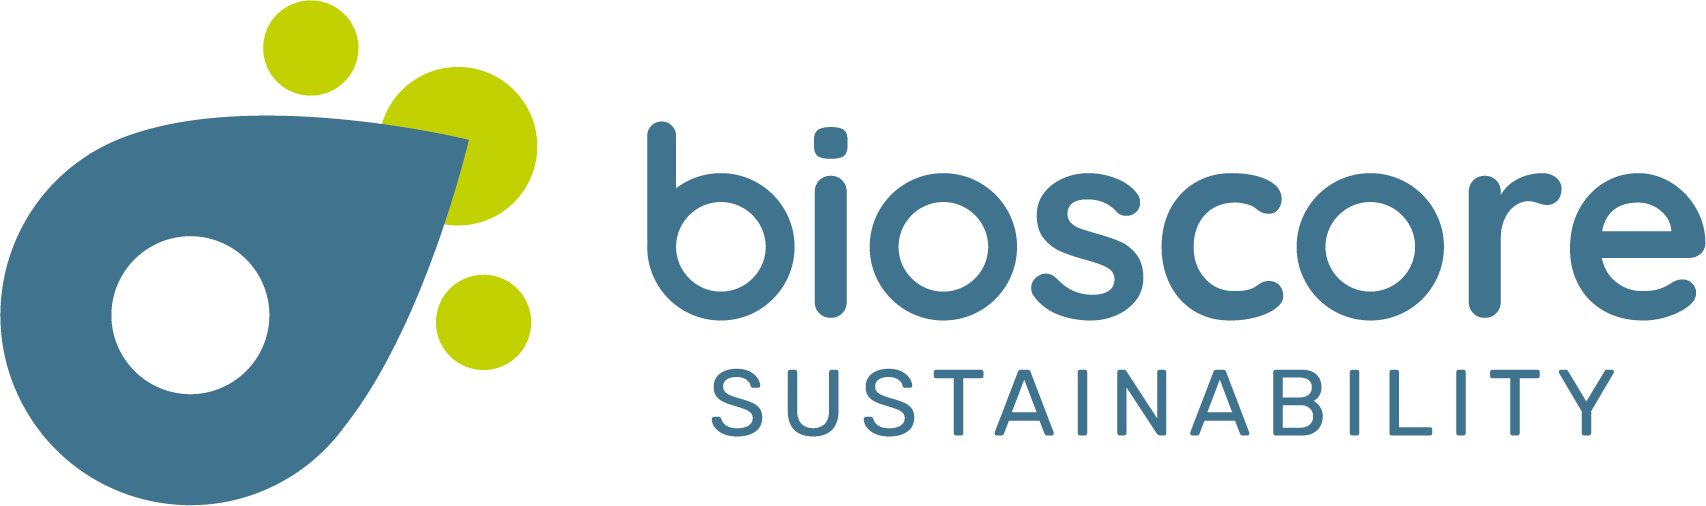 Certificado Sostenibilidad Bioscore